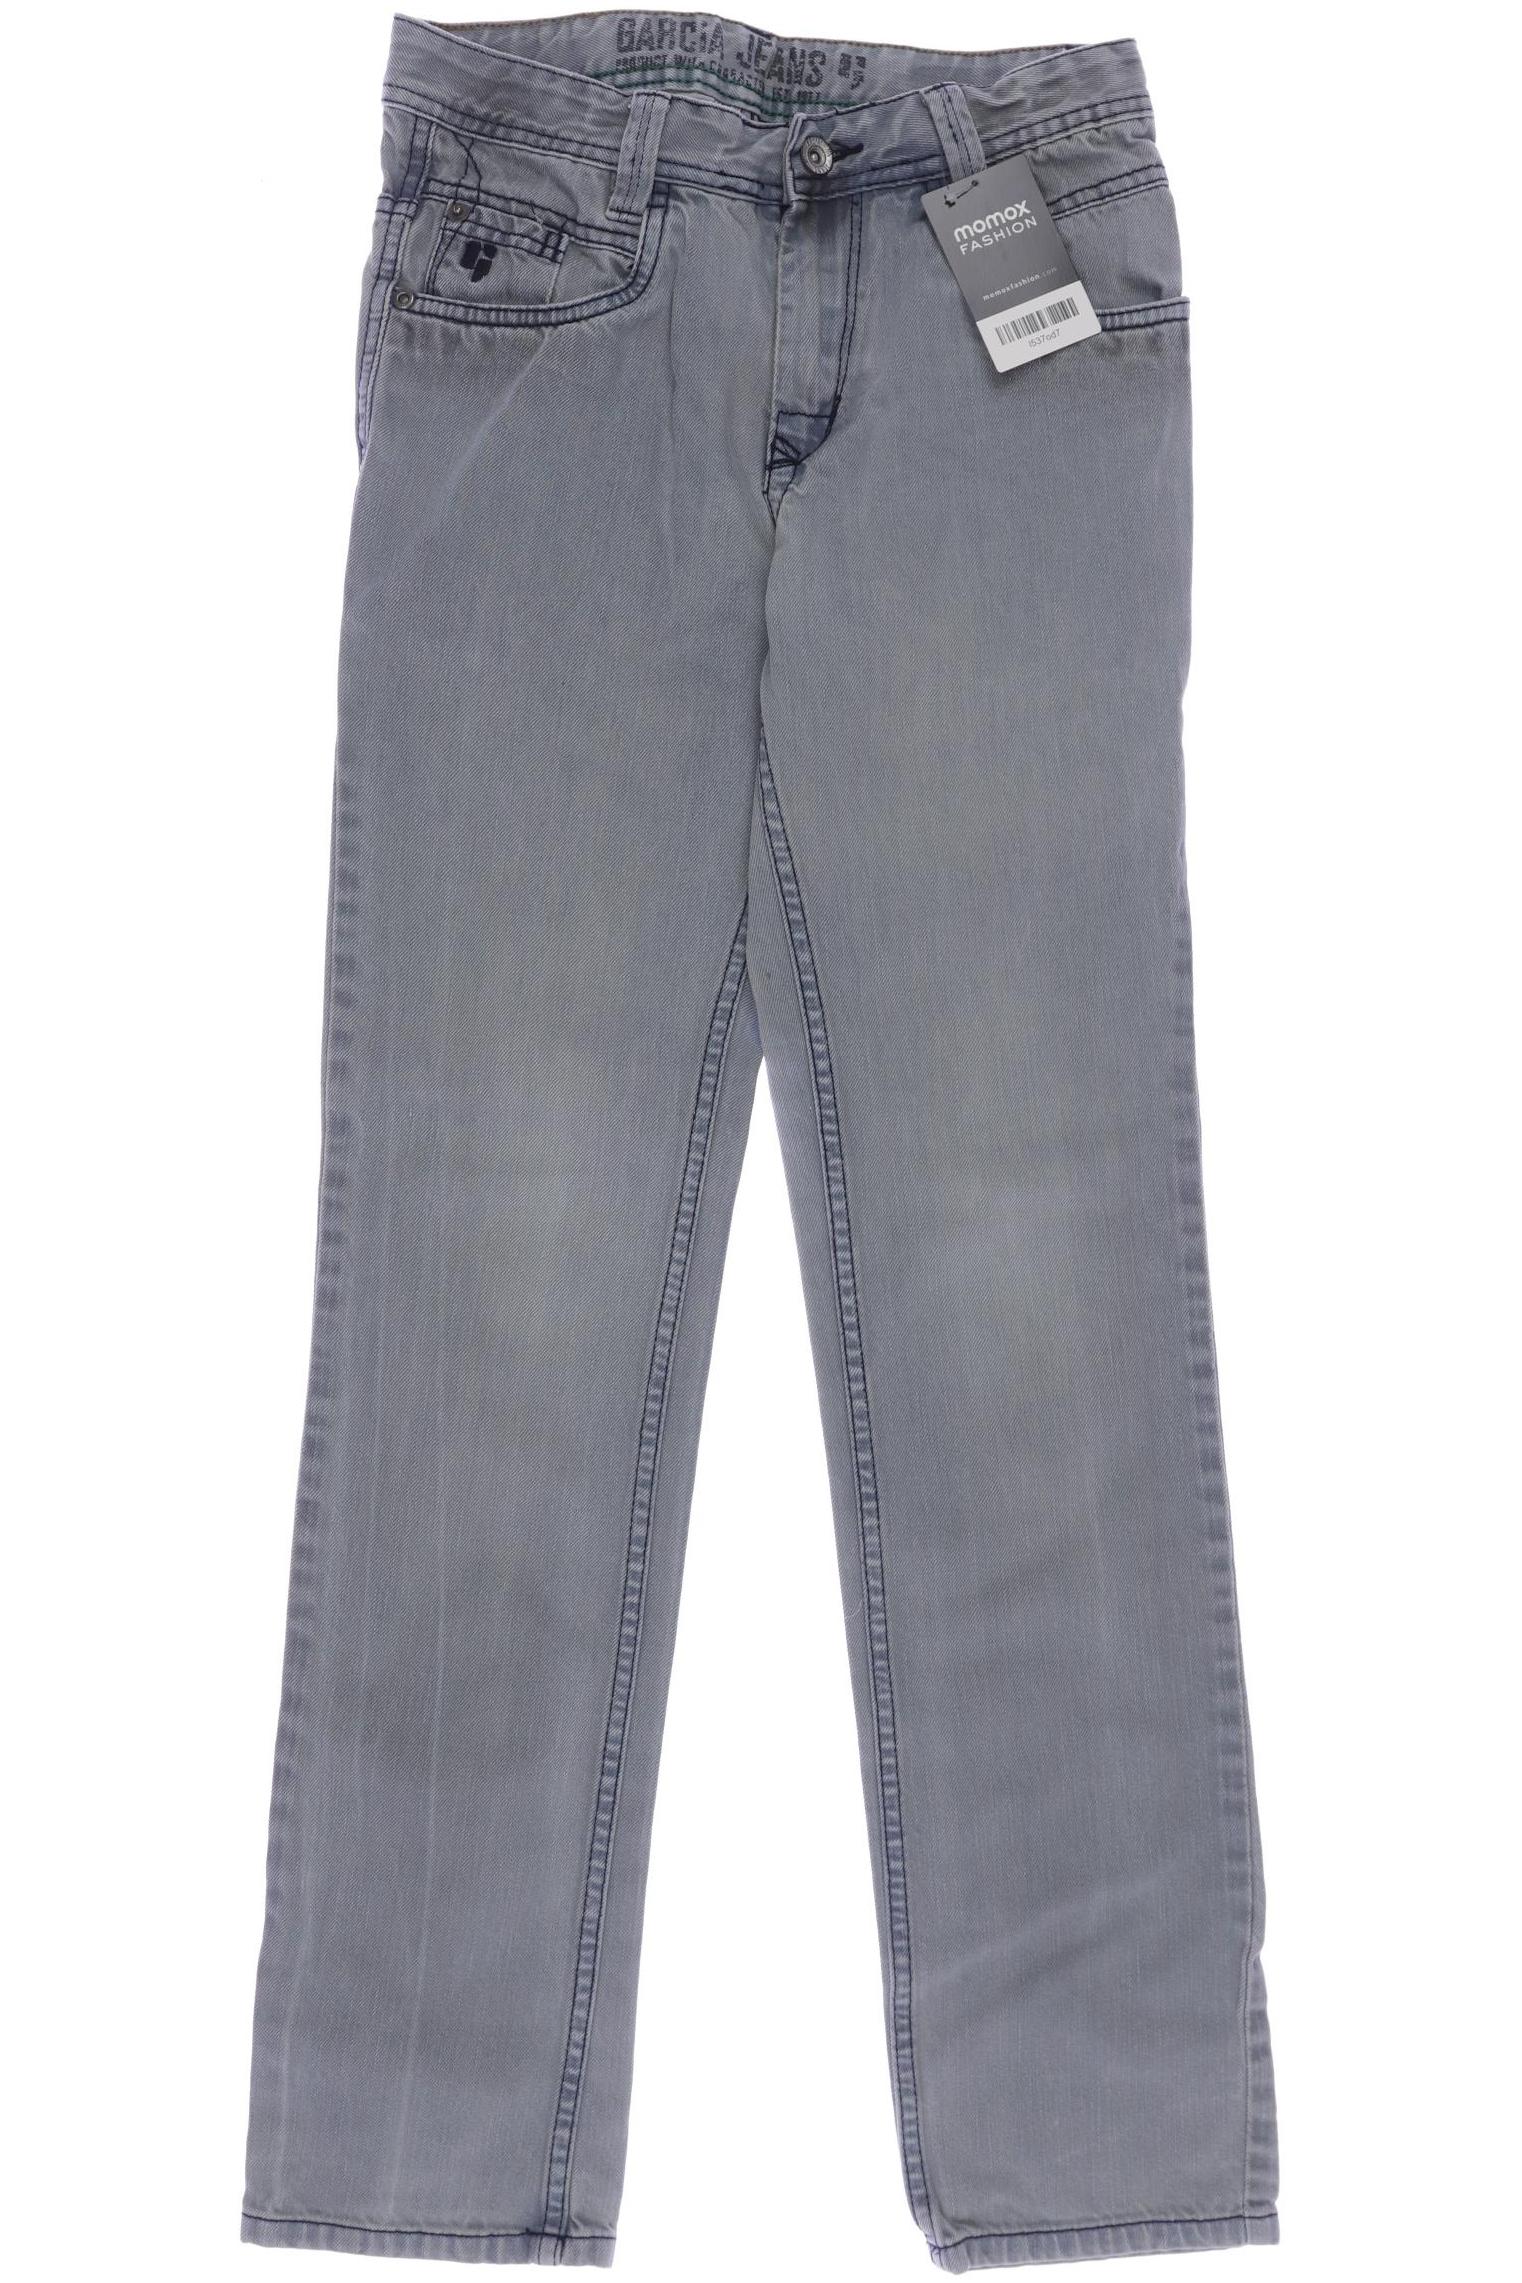 Garcia Herren Jeans, hellblau, Gr. 158 von GARCIA